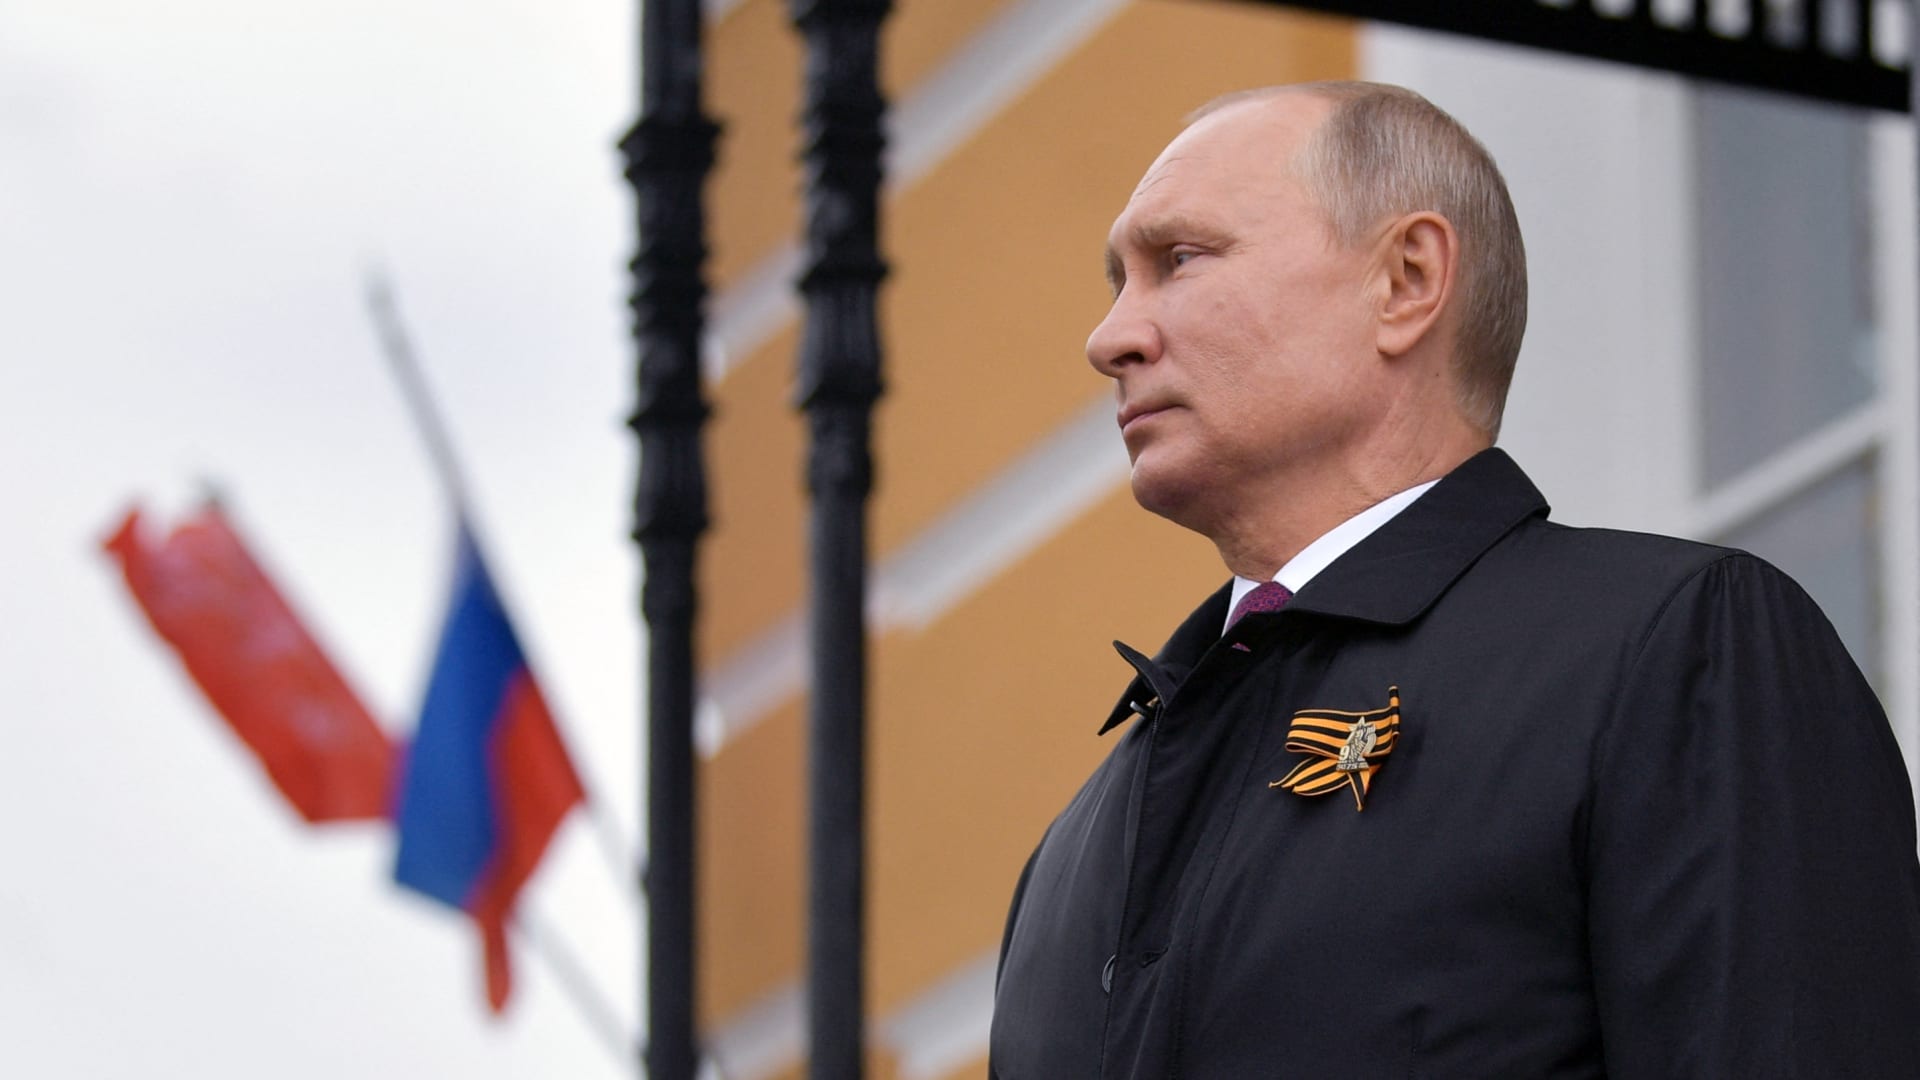 ما أهمية يوم 9 مايو لروسيا؟.. وهل يقرر فيه بوتين "أصعب سيناريو"؟